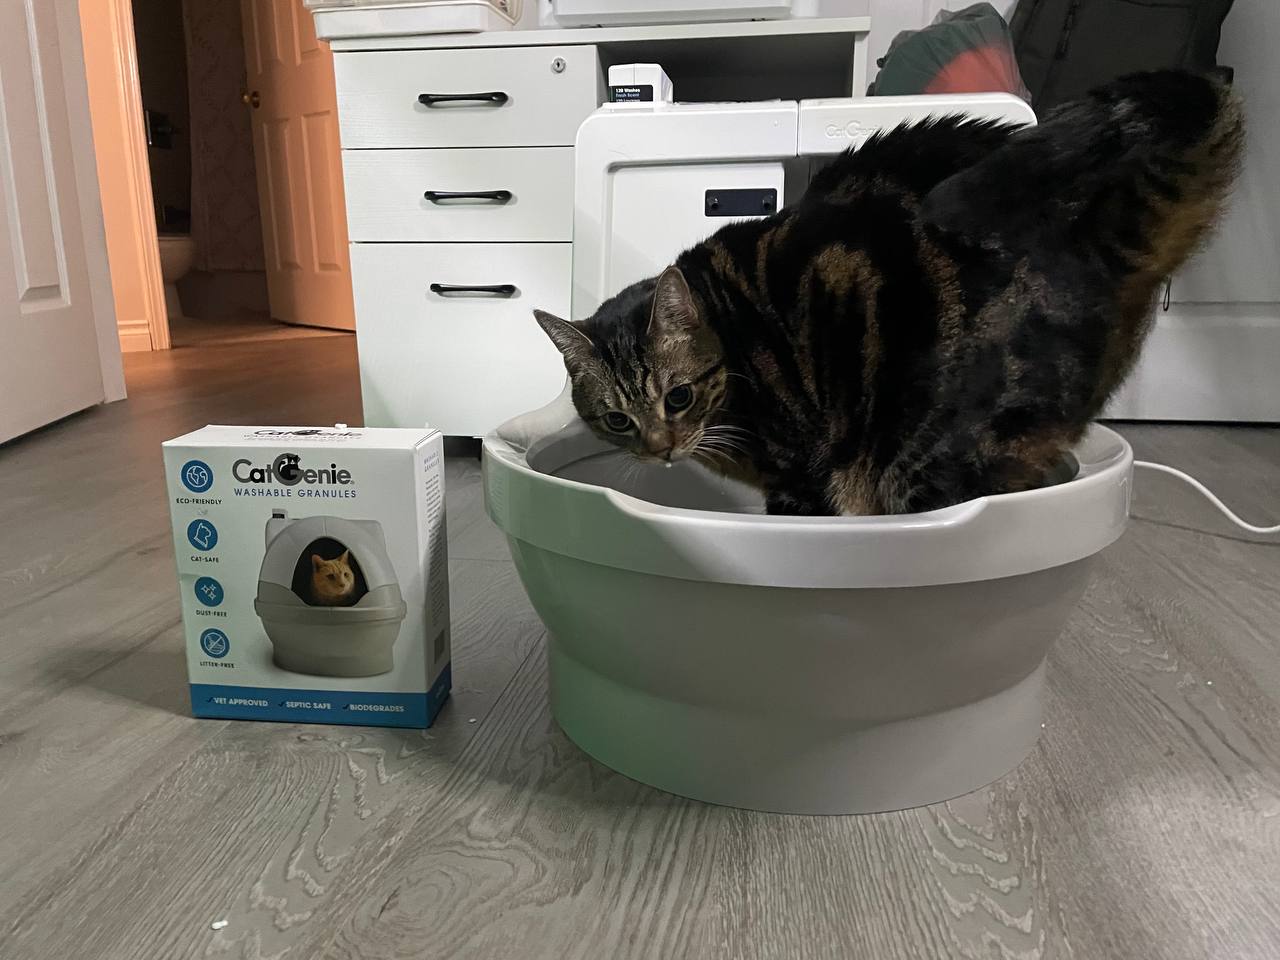 My cat is using Cat Genie A.I. litter box